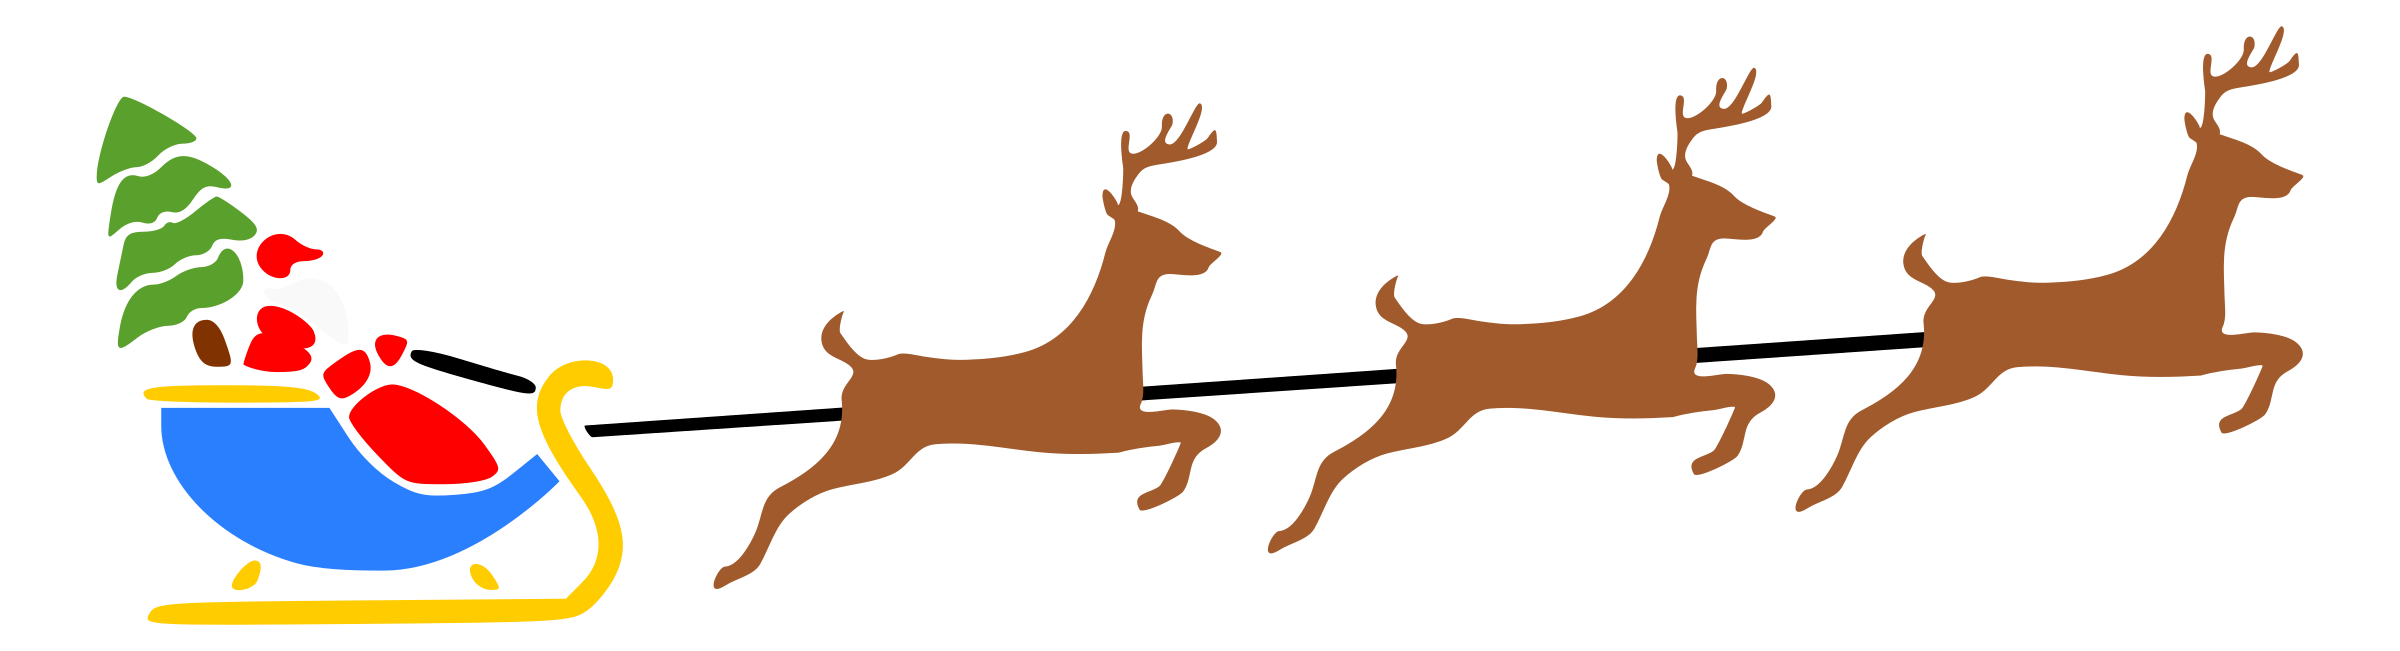 deer clipart color